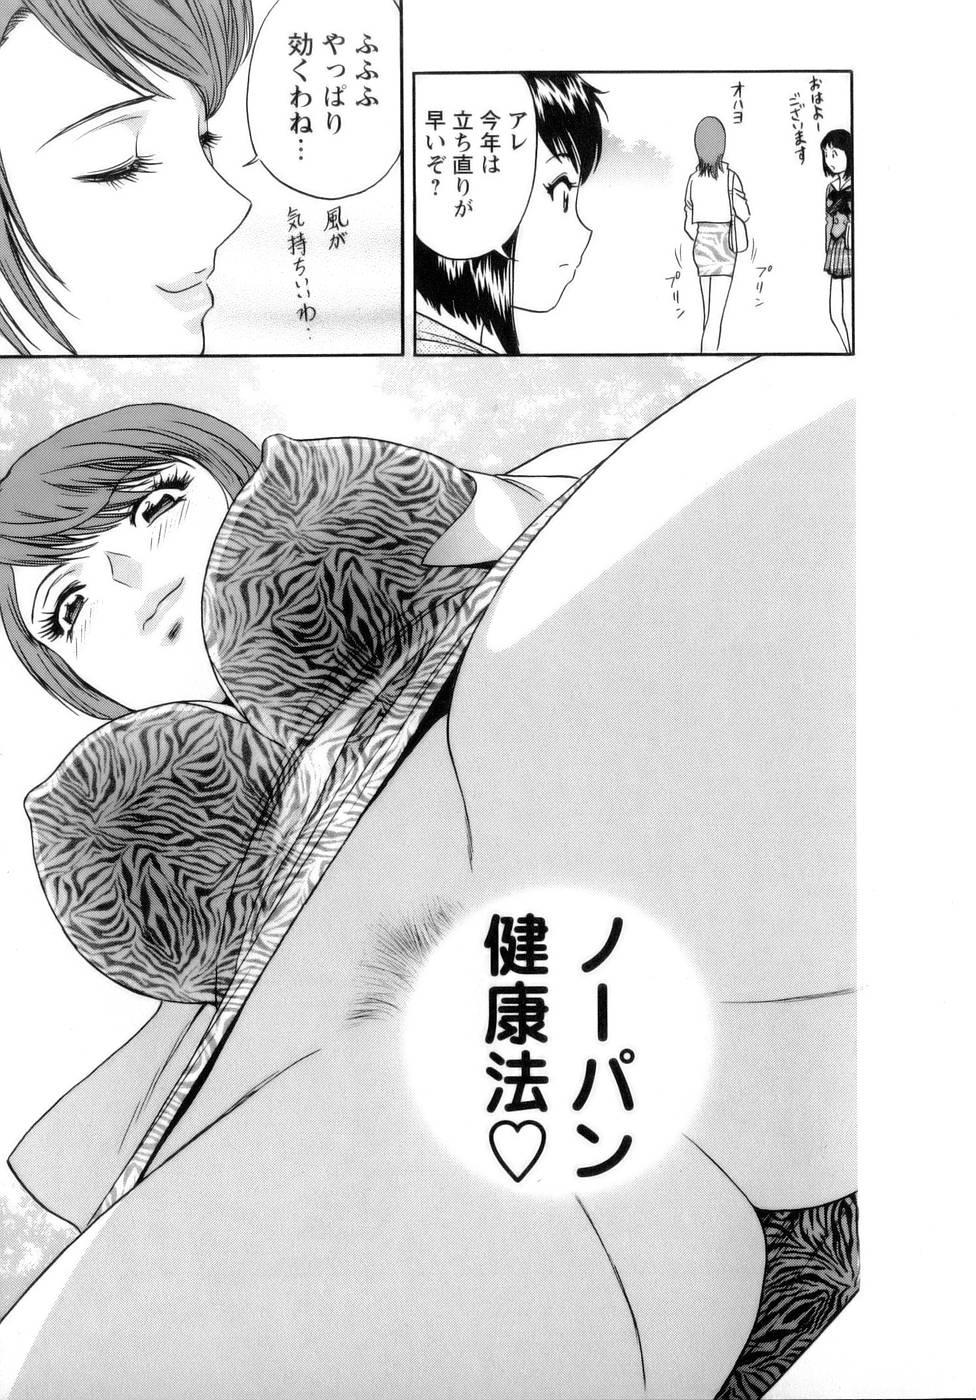 [Hidemaru] Mo-Retsu! Boin Sensei (Boing Boing Teacher) Vol.1 158